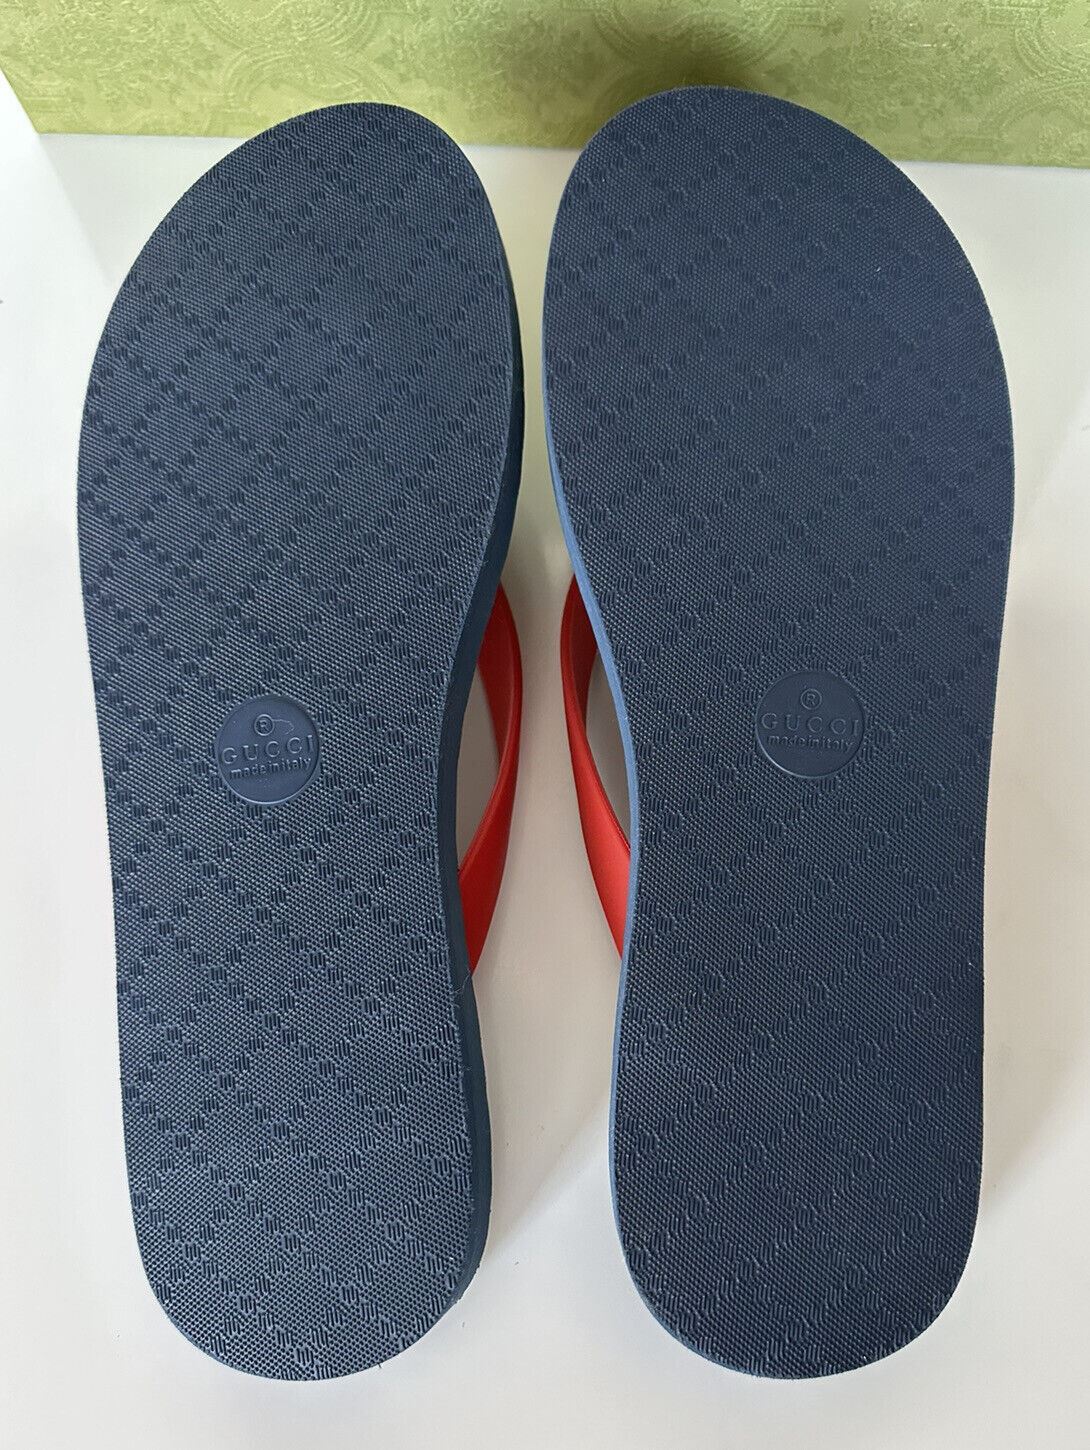 NIB Gucci Herren-Flipflops mit doppeltem G-Tanga in Rot/Blau, 9,5 US (Gucci 9) 659229